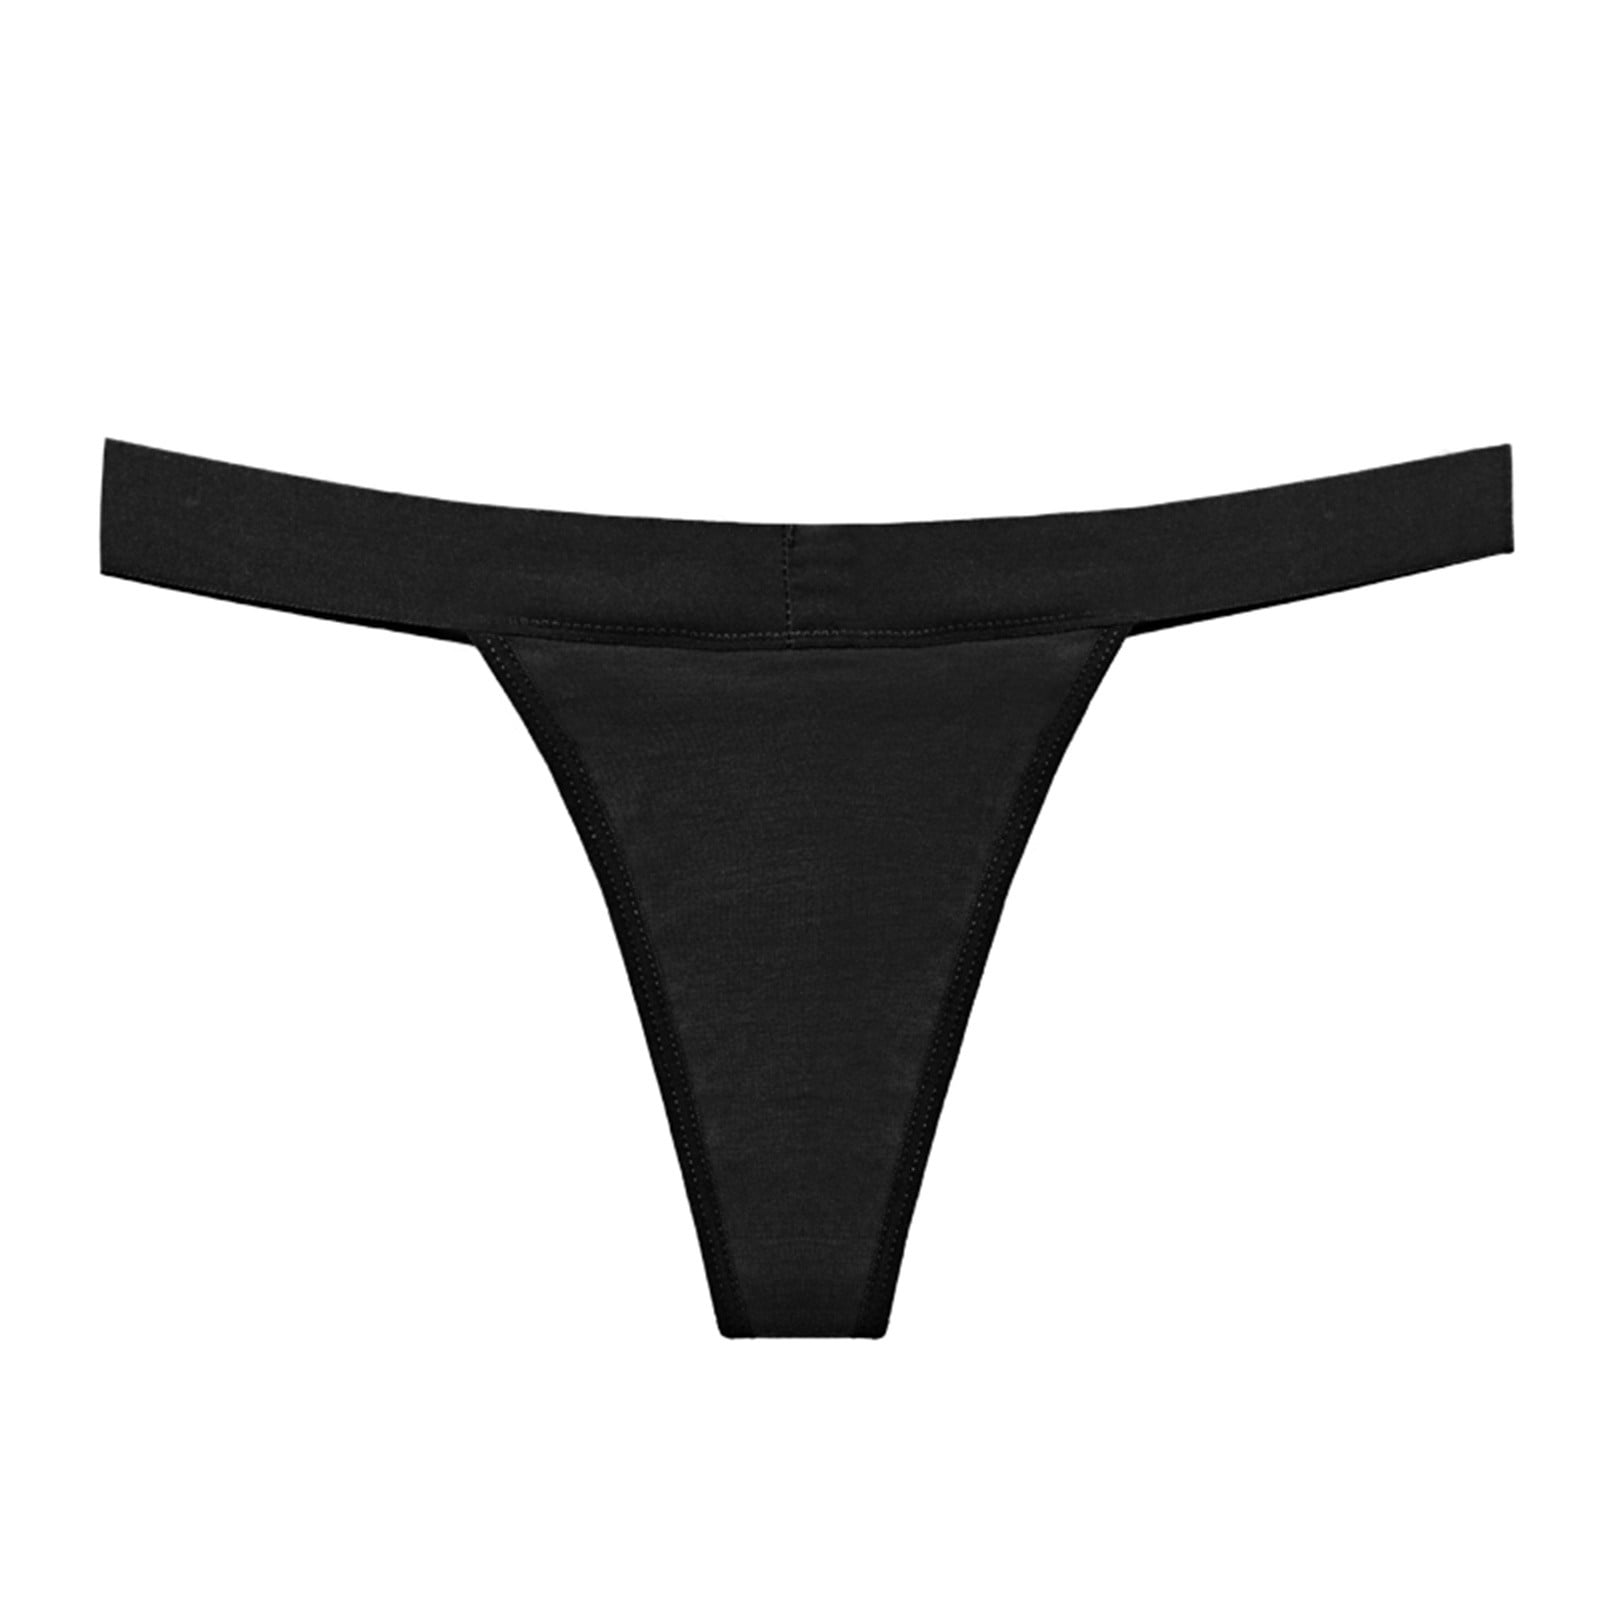 adviicd Period Panties for Teens Underwear Lace Panties High